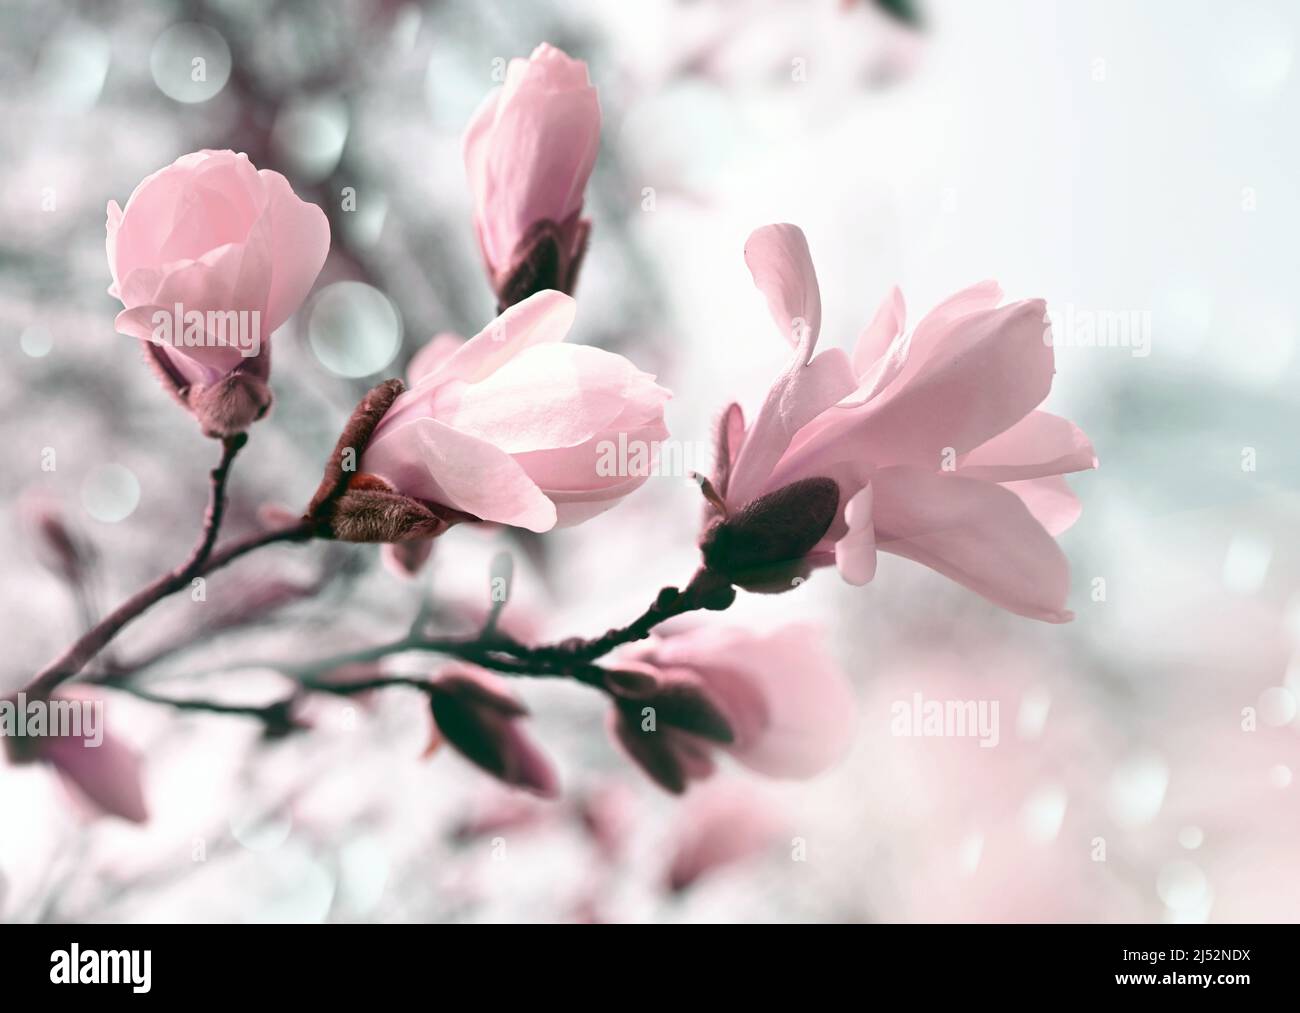 Branche magnolia rose fleur arbre fleurs dans la lumière douce. Jour de printemps ensoleillé dans le jardin. Heure de printemps. Fond floral naturel. Jardin botanique Banque D'Images